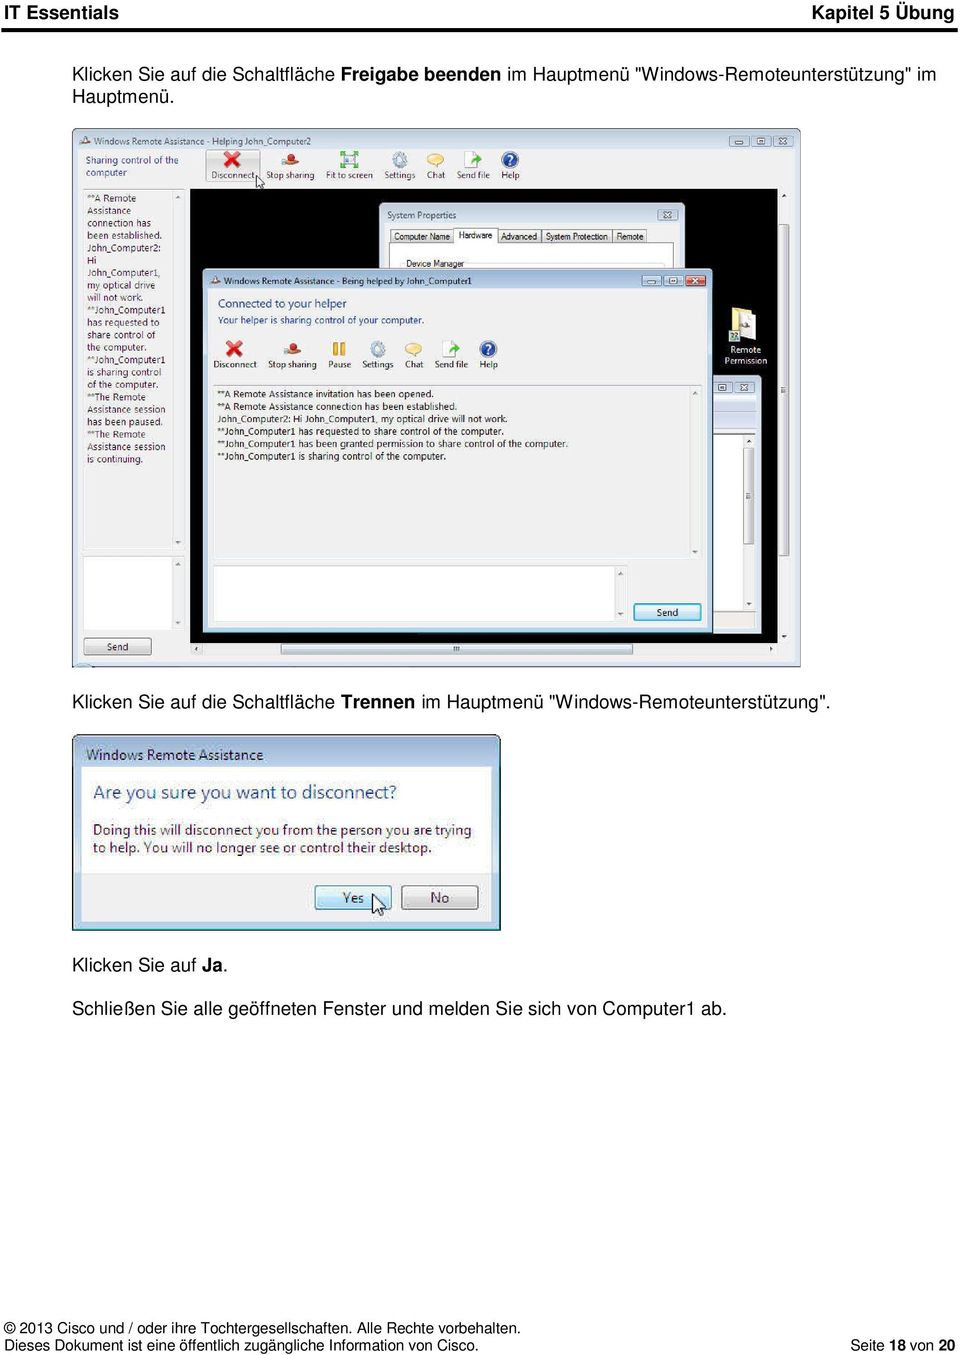 Klicken Sie auf die Schaltfläche Trennen im Hauptmenü "Windows-Remoteunterstützung".